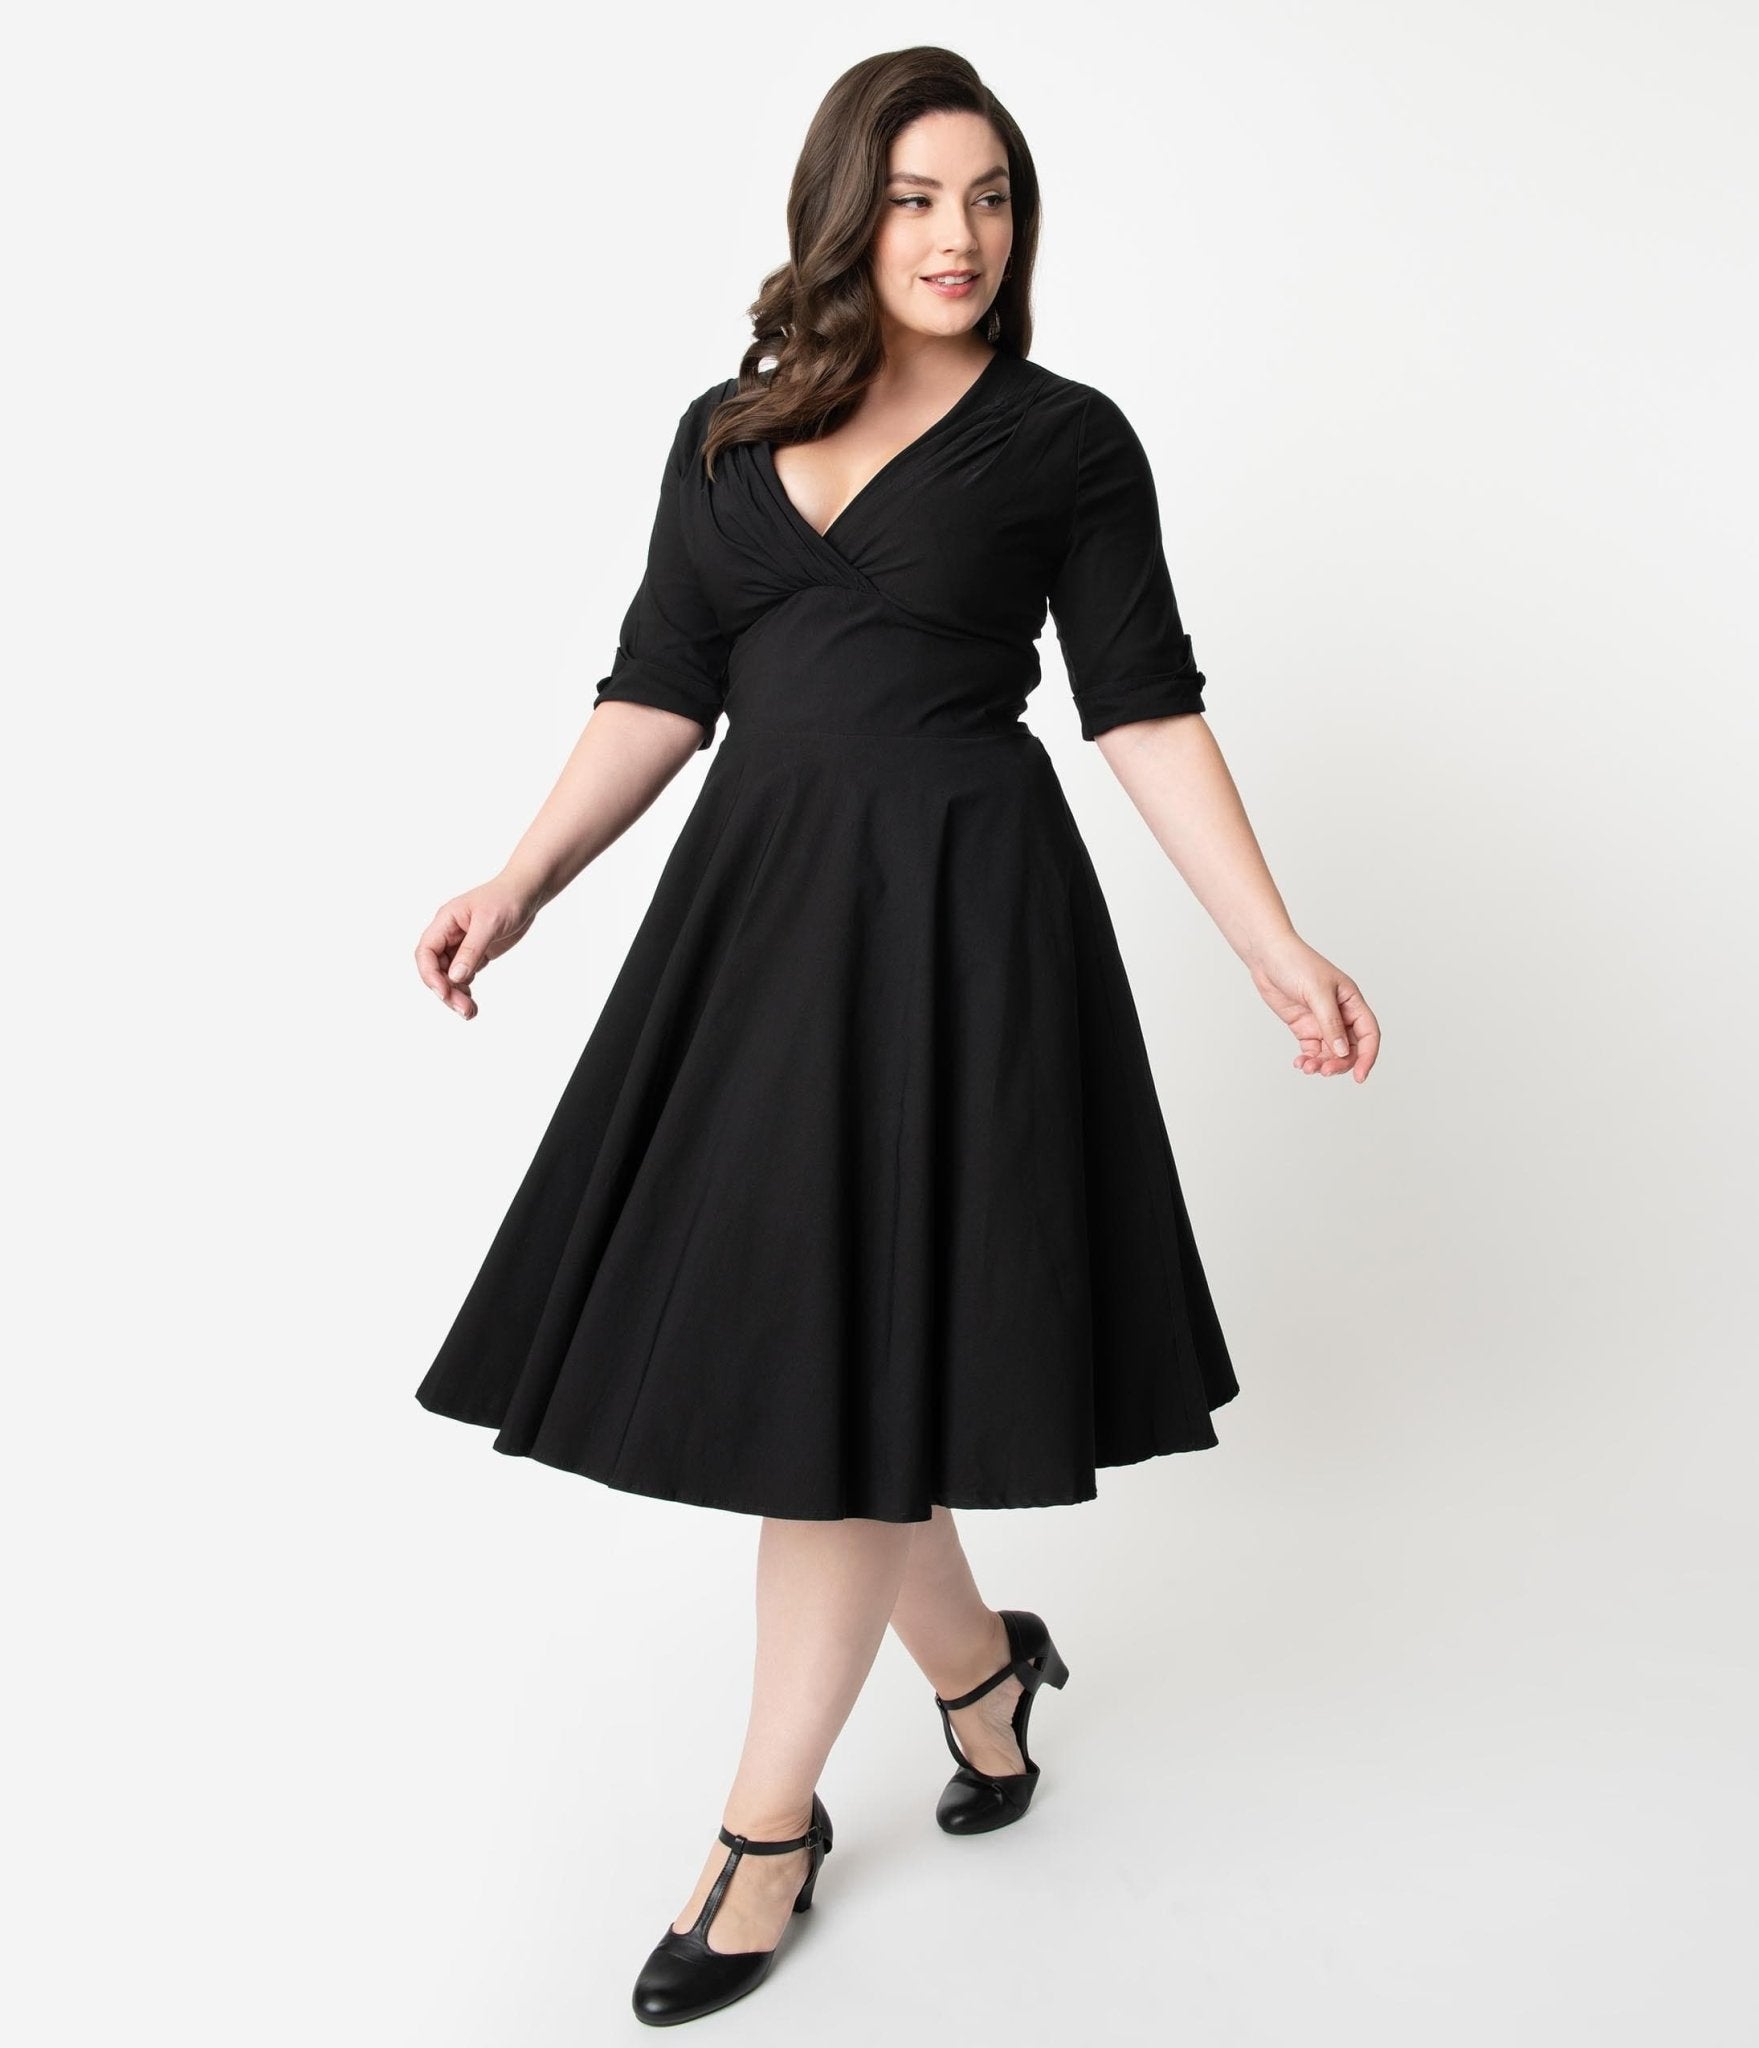 Unique Vintage Plus Size Black Delores Swing Dress with Sleeves - Unique Vintage - Womens, DRESSES, SWING